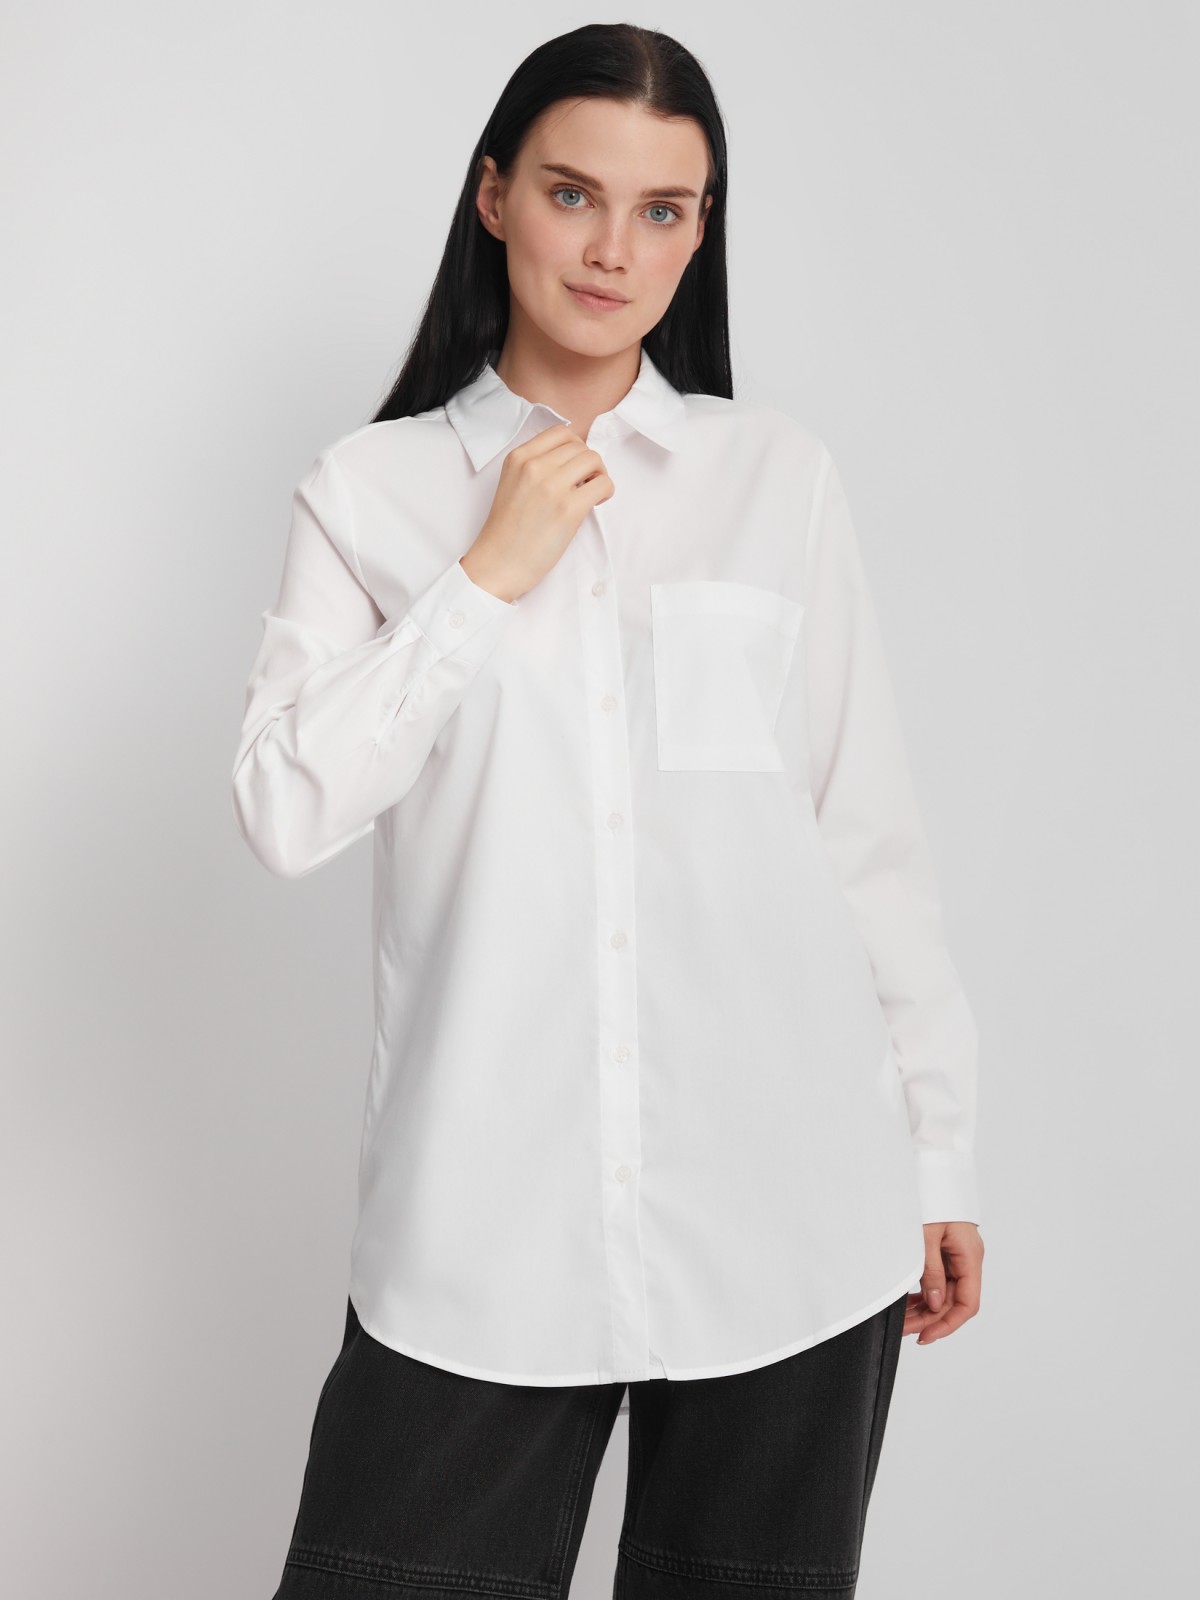 Офисная рубашка прямого силуэта с принтом на спине zolla 22231117Y353, цвет белый, размер S - фото 3